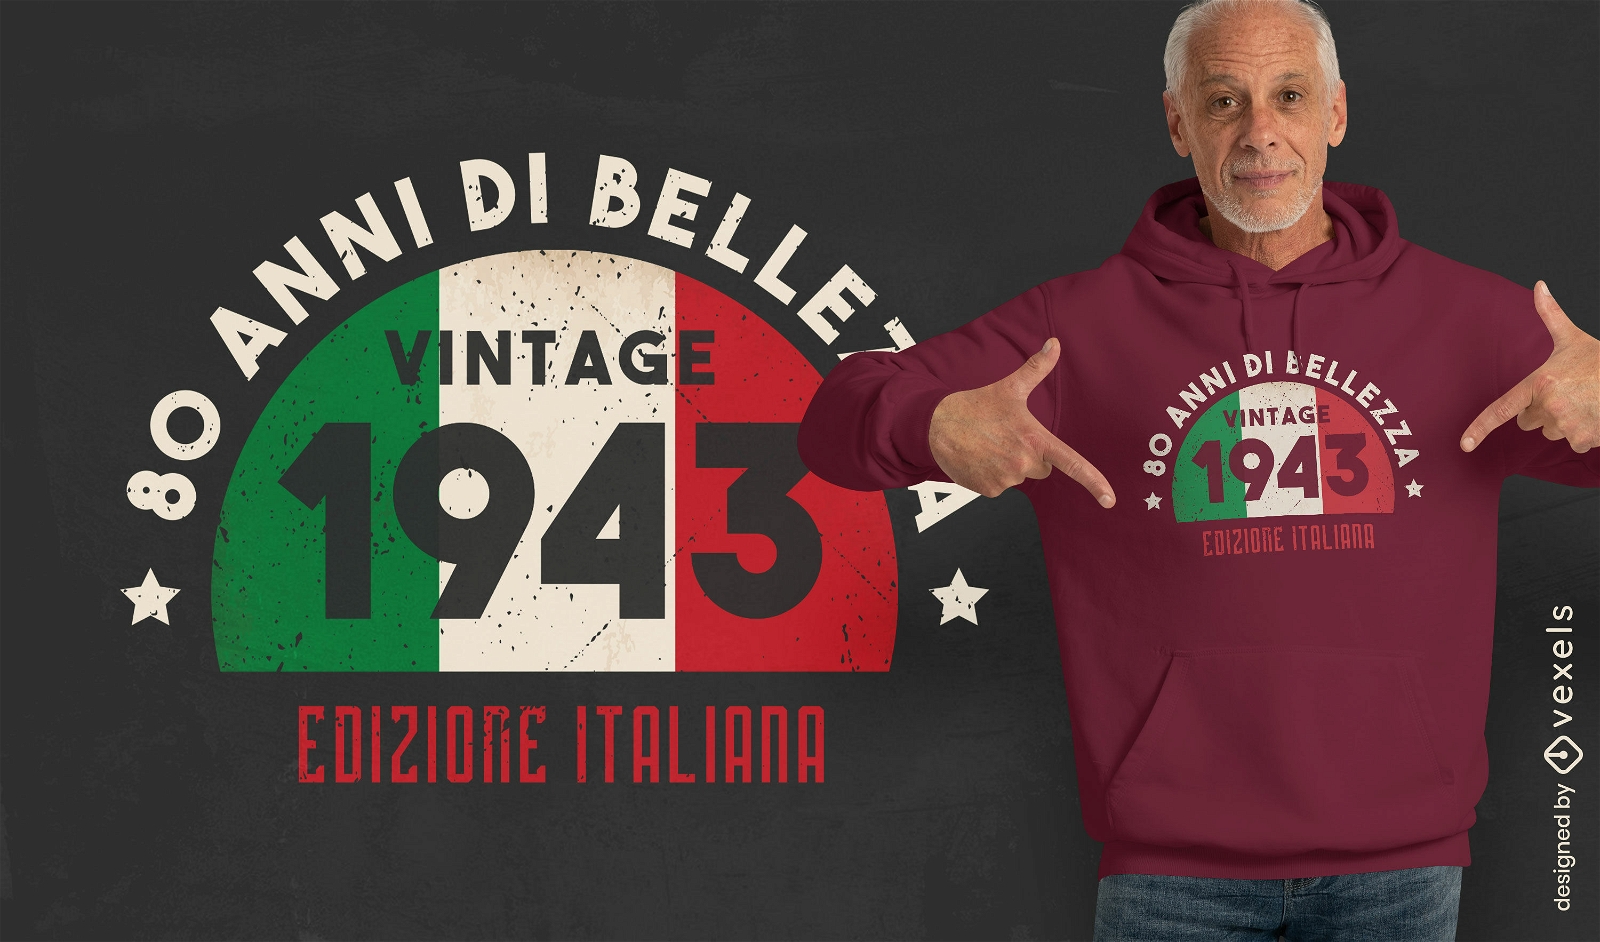 Dise?o de camiseta de bandera italiana vintage